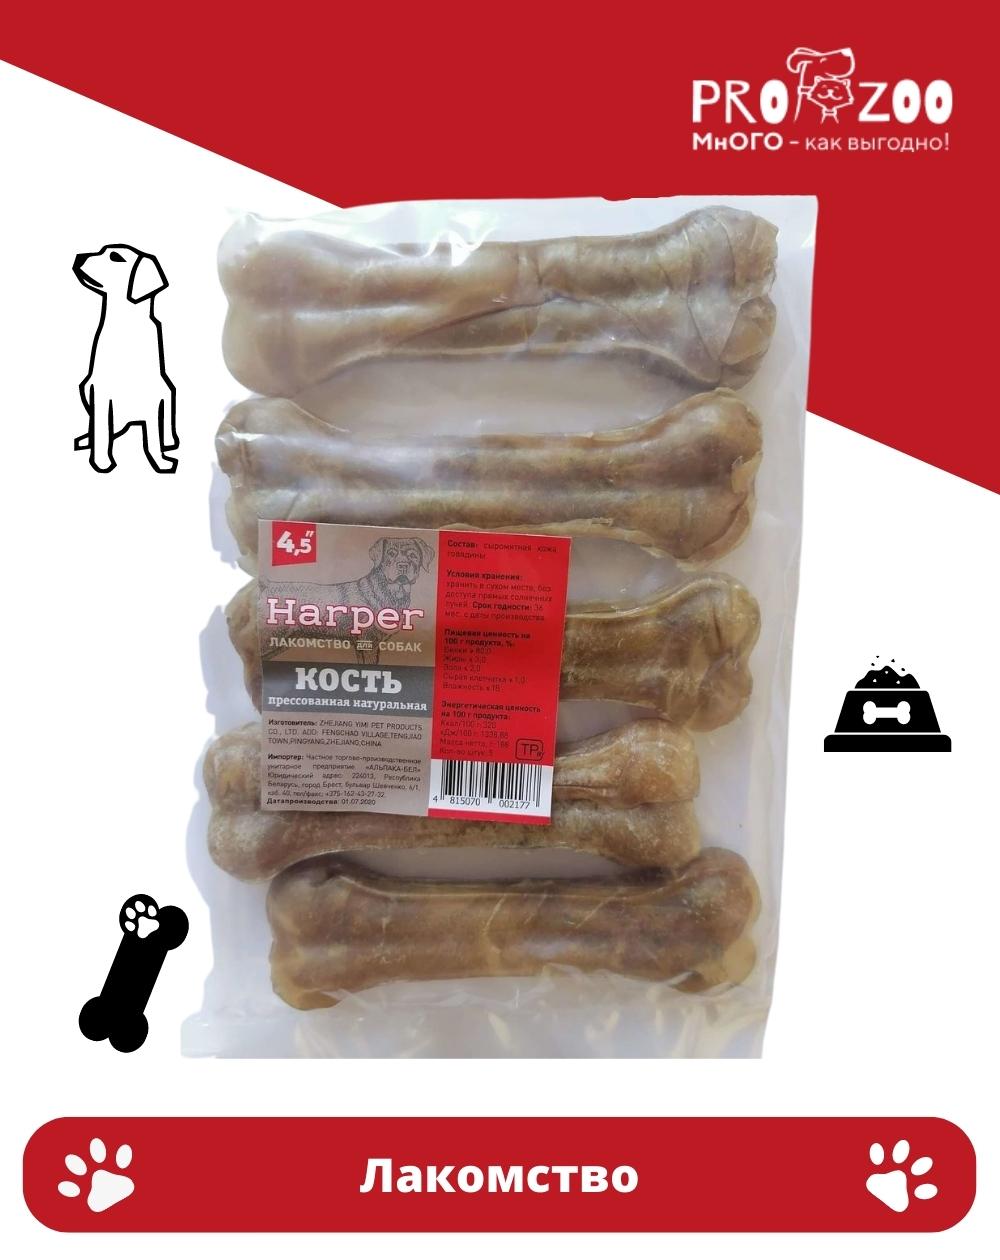 Лакомство Harper кость прессованная для собак, натуральная, 4,5 см 1